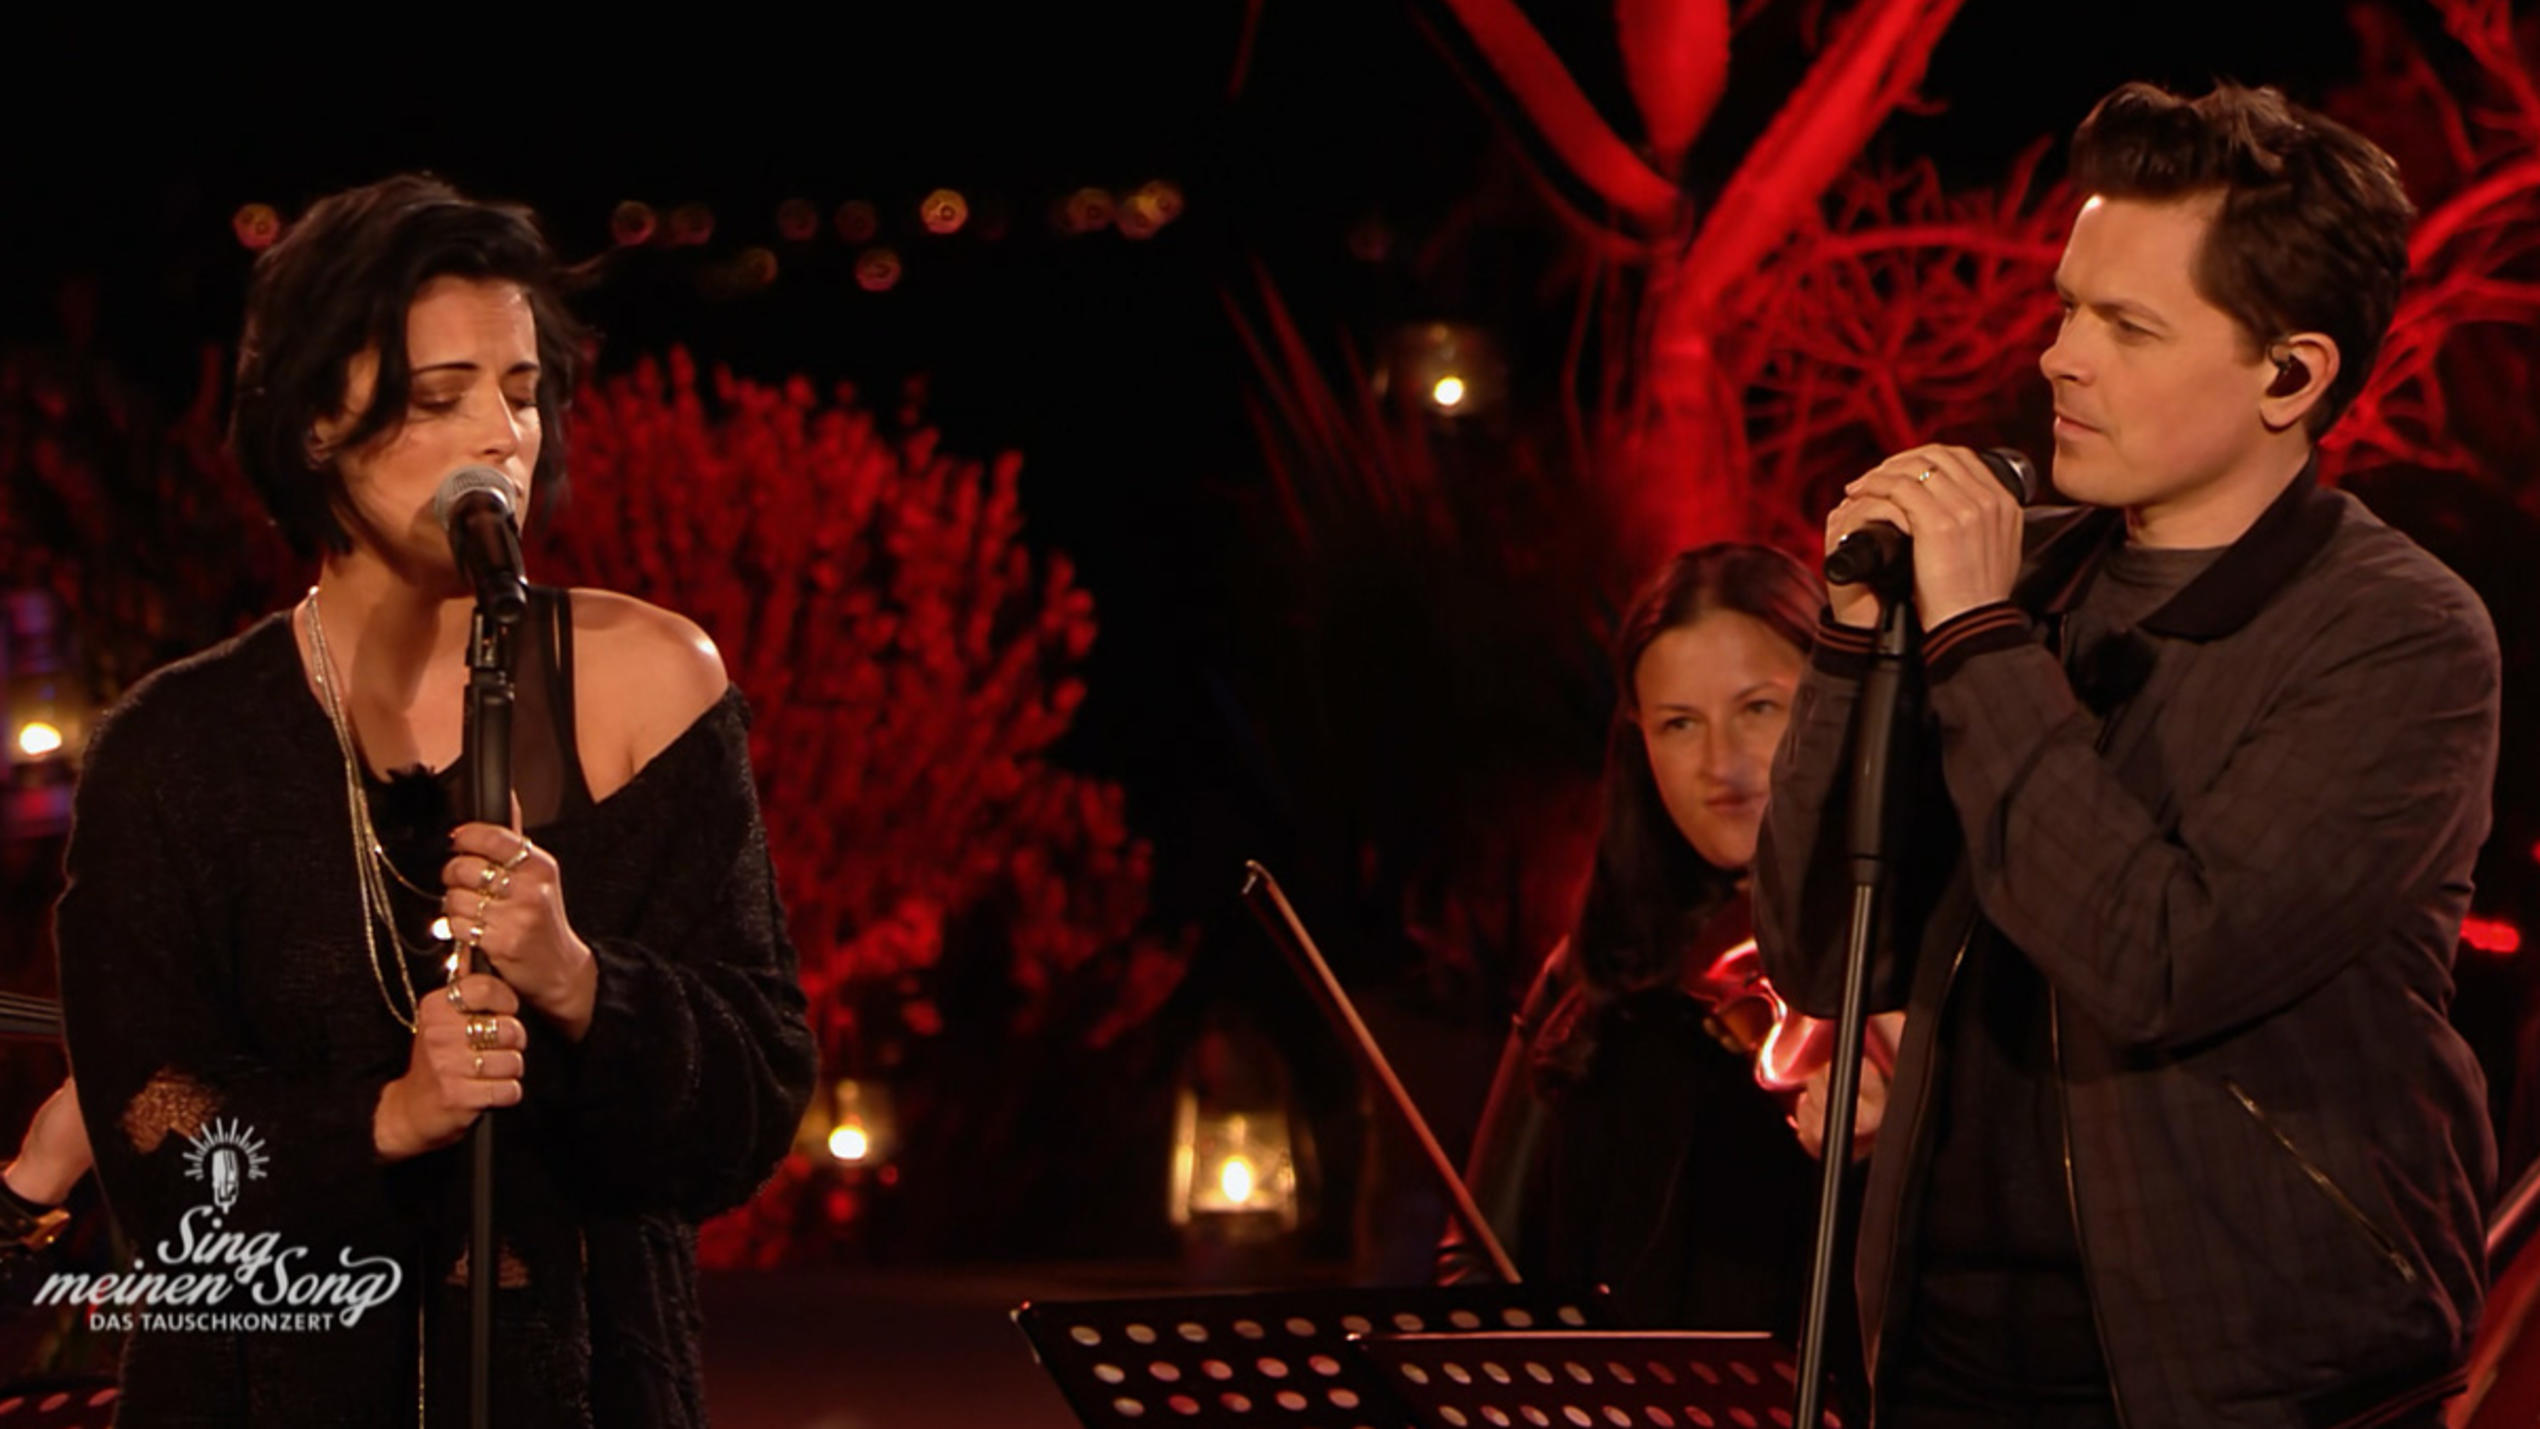 Stefanie Kloß und Michael Patrick Kelly performen "An Angel".